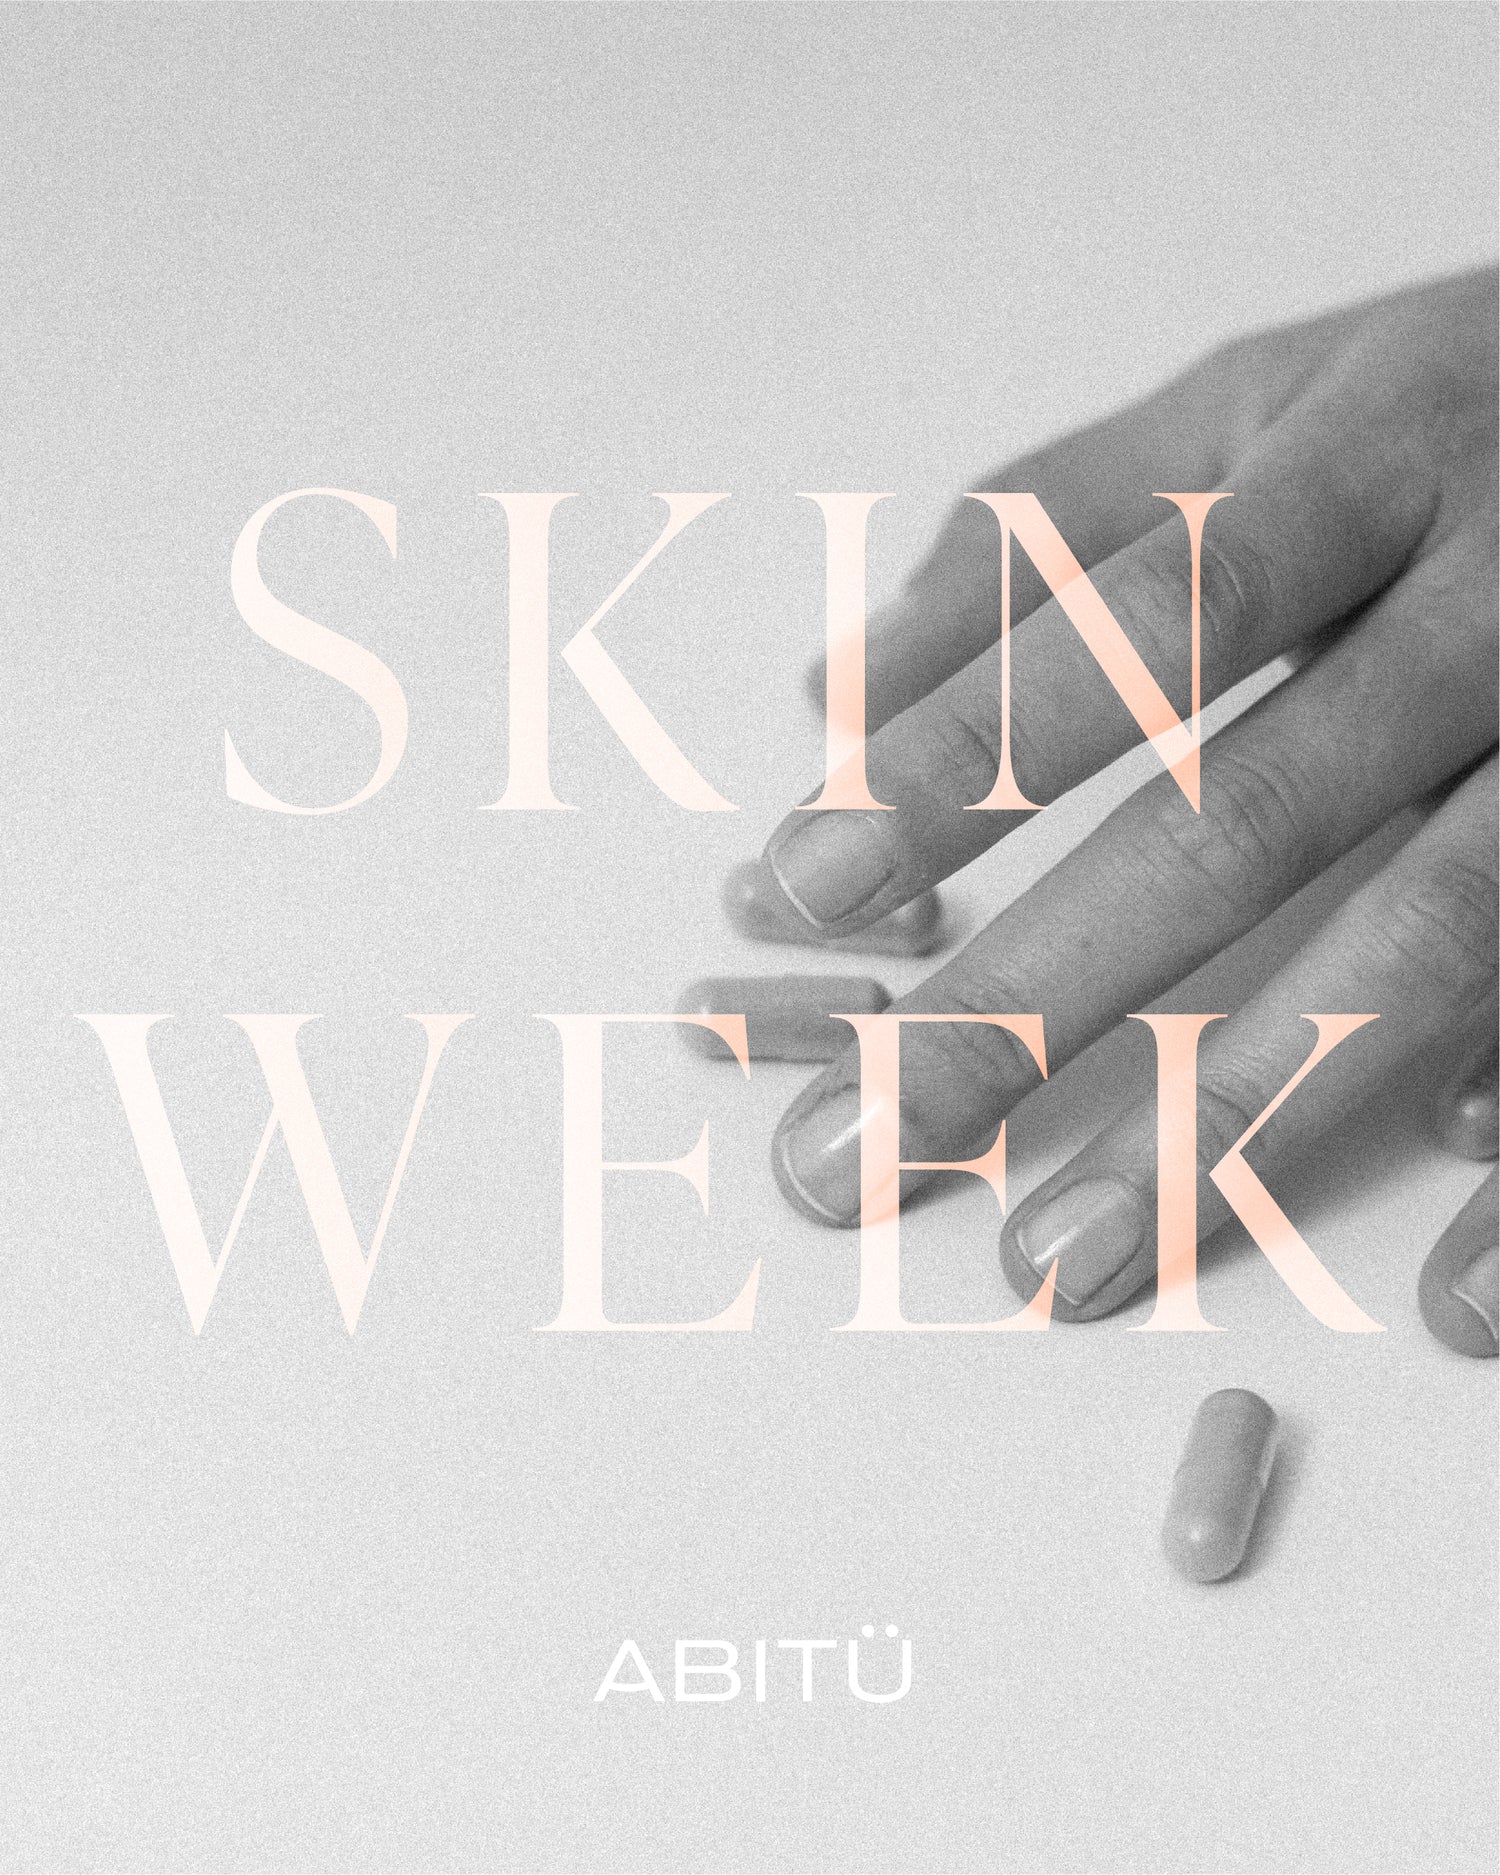 La semana más emocionante de la piel: #SkinWeekAbitü